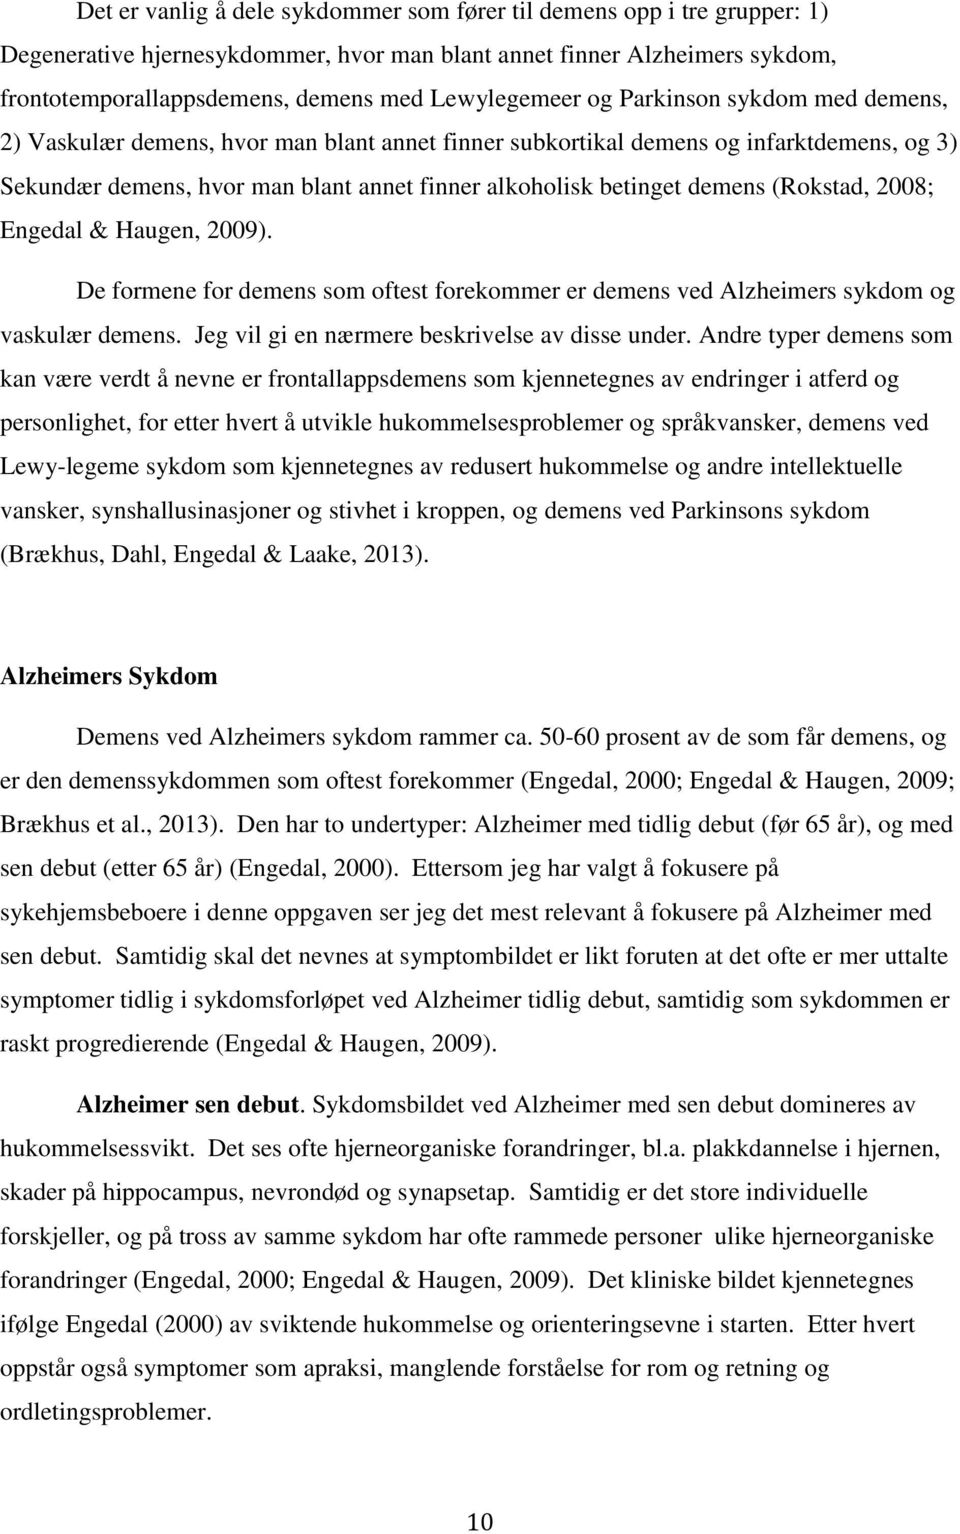 betinget demens (Rokstad, 2008; Engedal & Haugen, 2009). De formene for demens som oftest forekommer er demens ved Alzheimers sykdom og vaskulær demens.